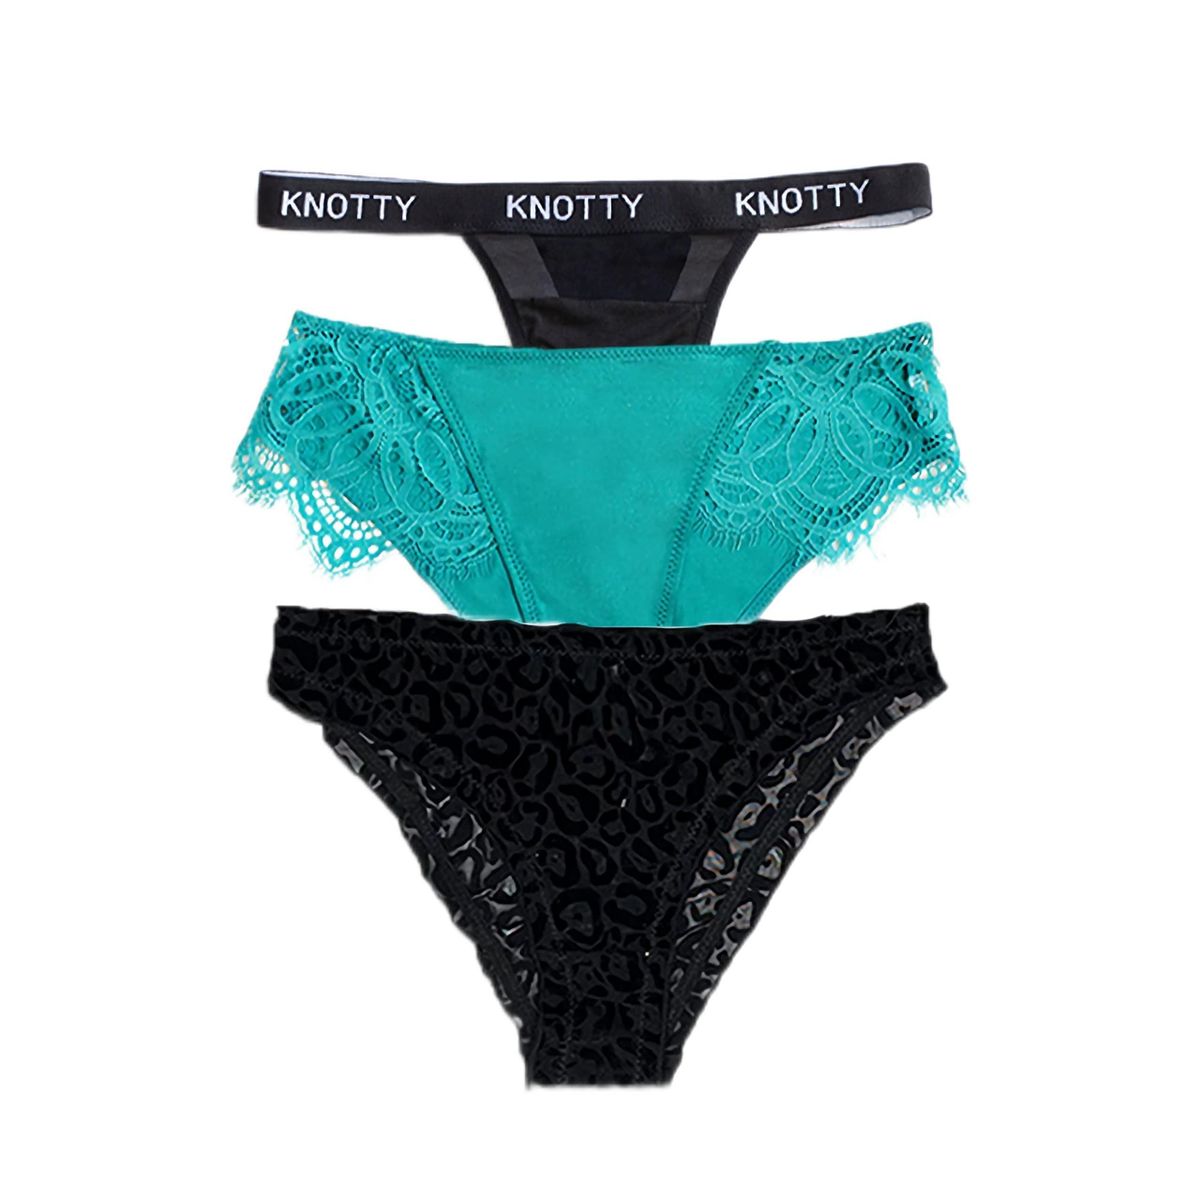 getknotty Knotty Underwear -10 Pack Briefs Women's Underwear